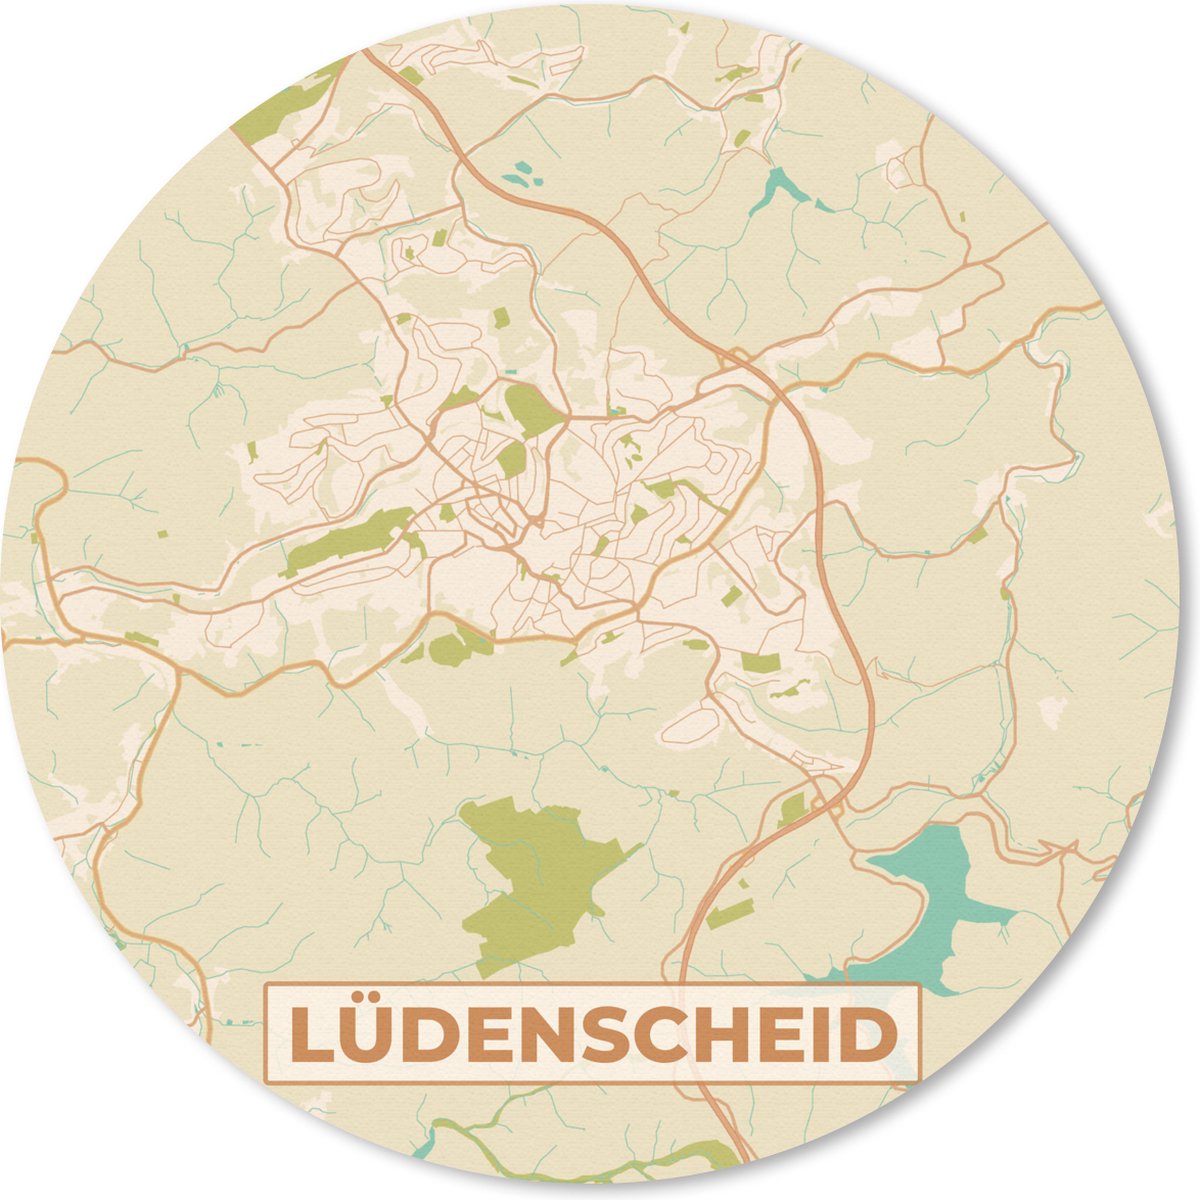 Muismat - Mousepad - Rond - Plattegrond - Lüdenscheid - Kaart - Stadskaart - Vintage - 50x50 cm - Ronde muismat